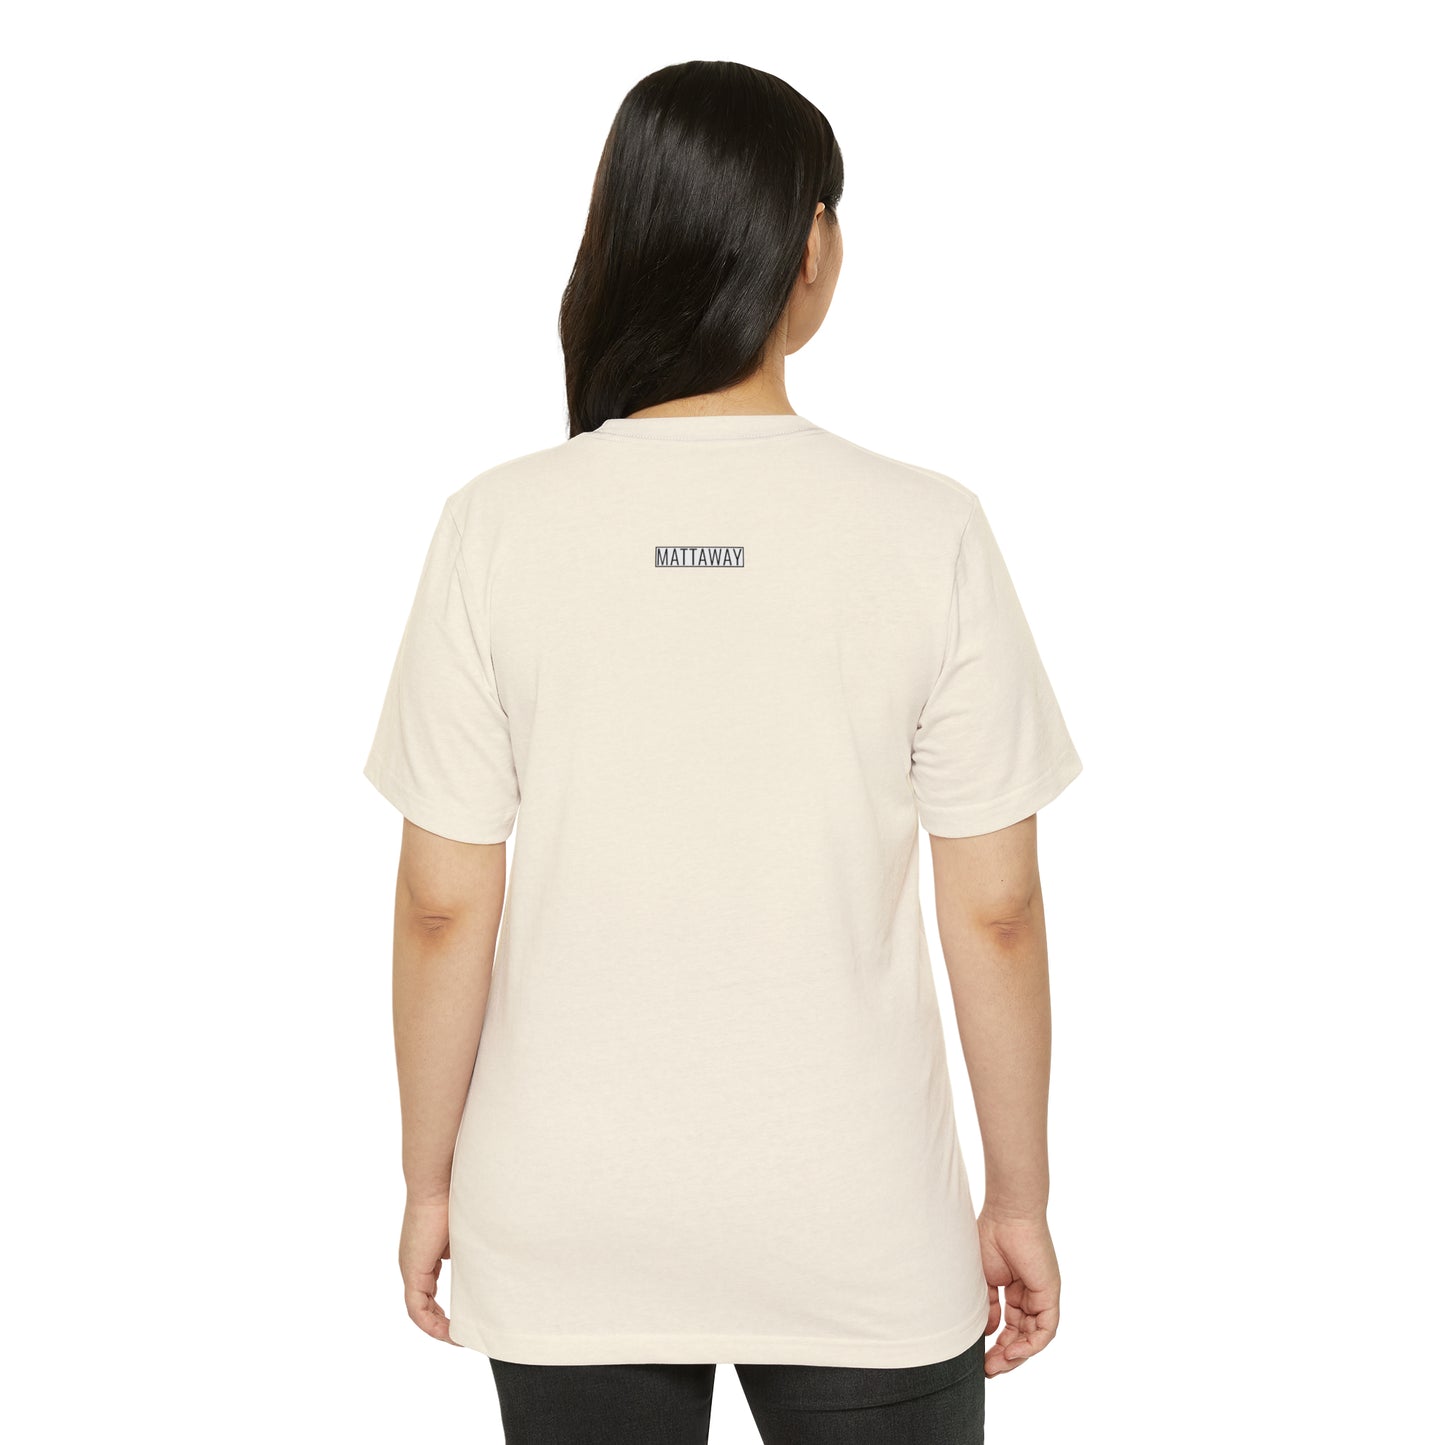 MINIMAL SHAPE 102 - Unisex Recycled Organic T-Shirt